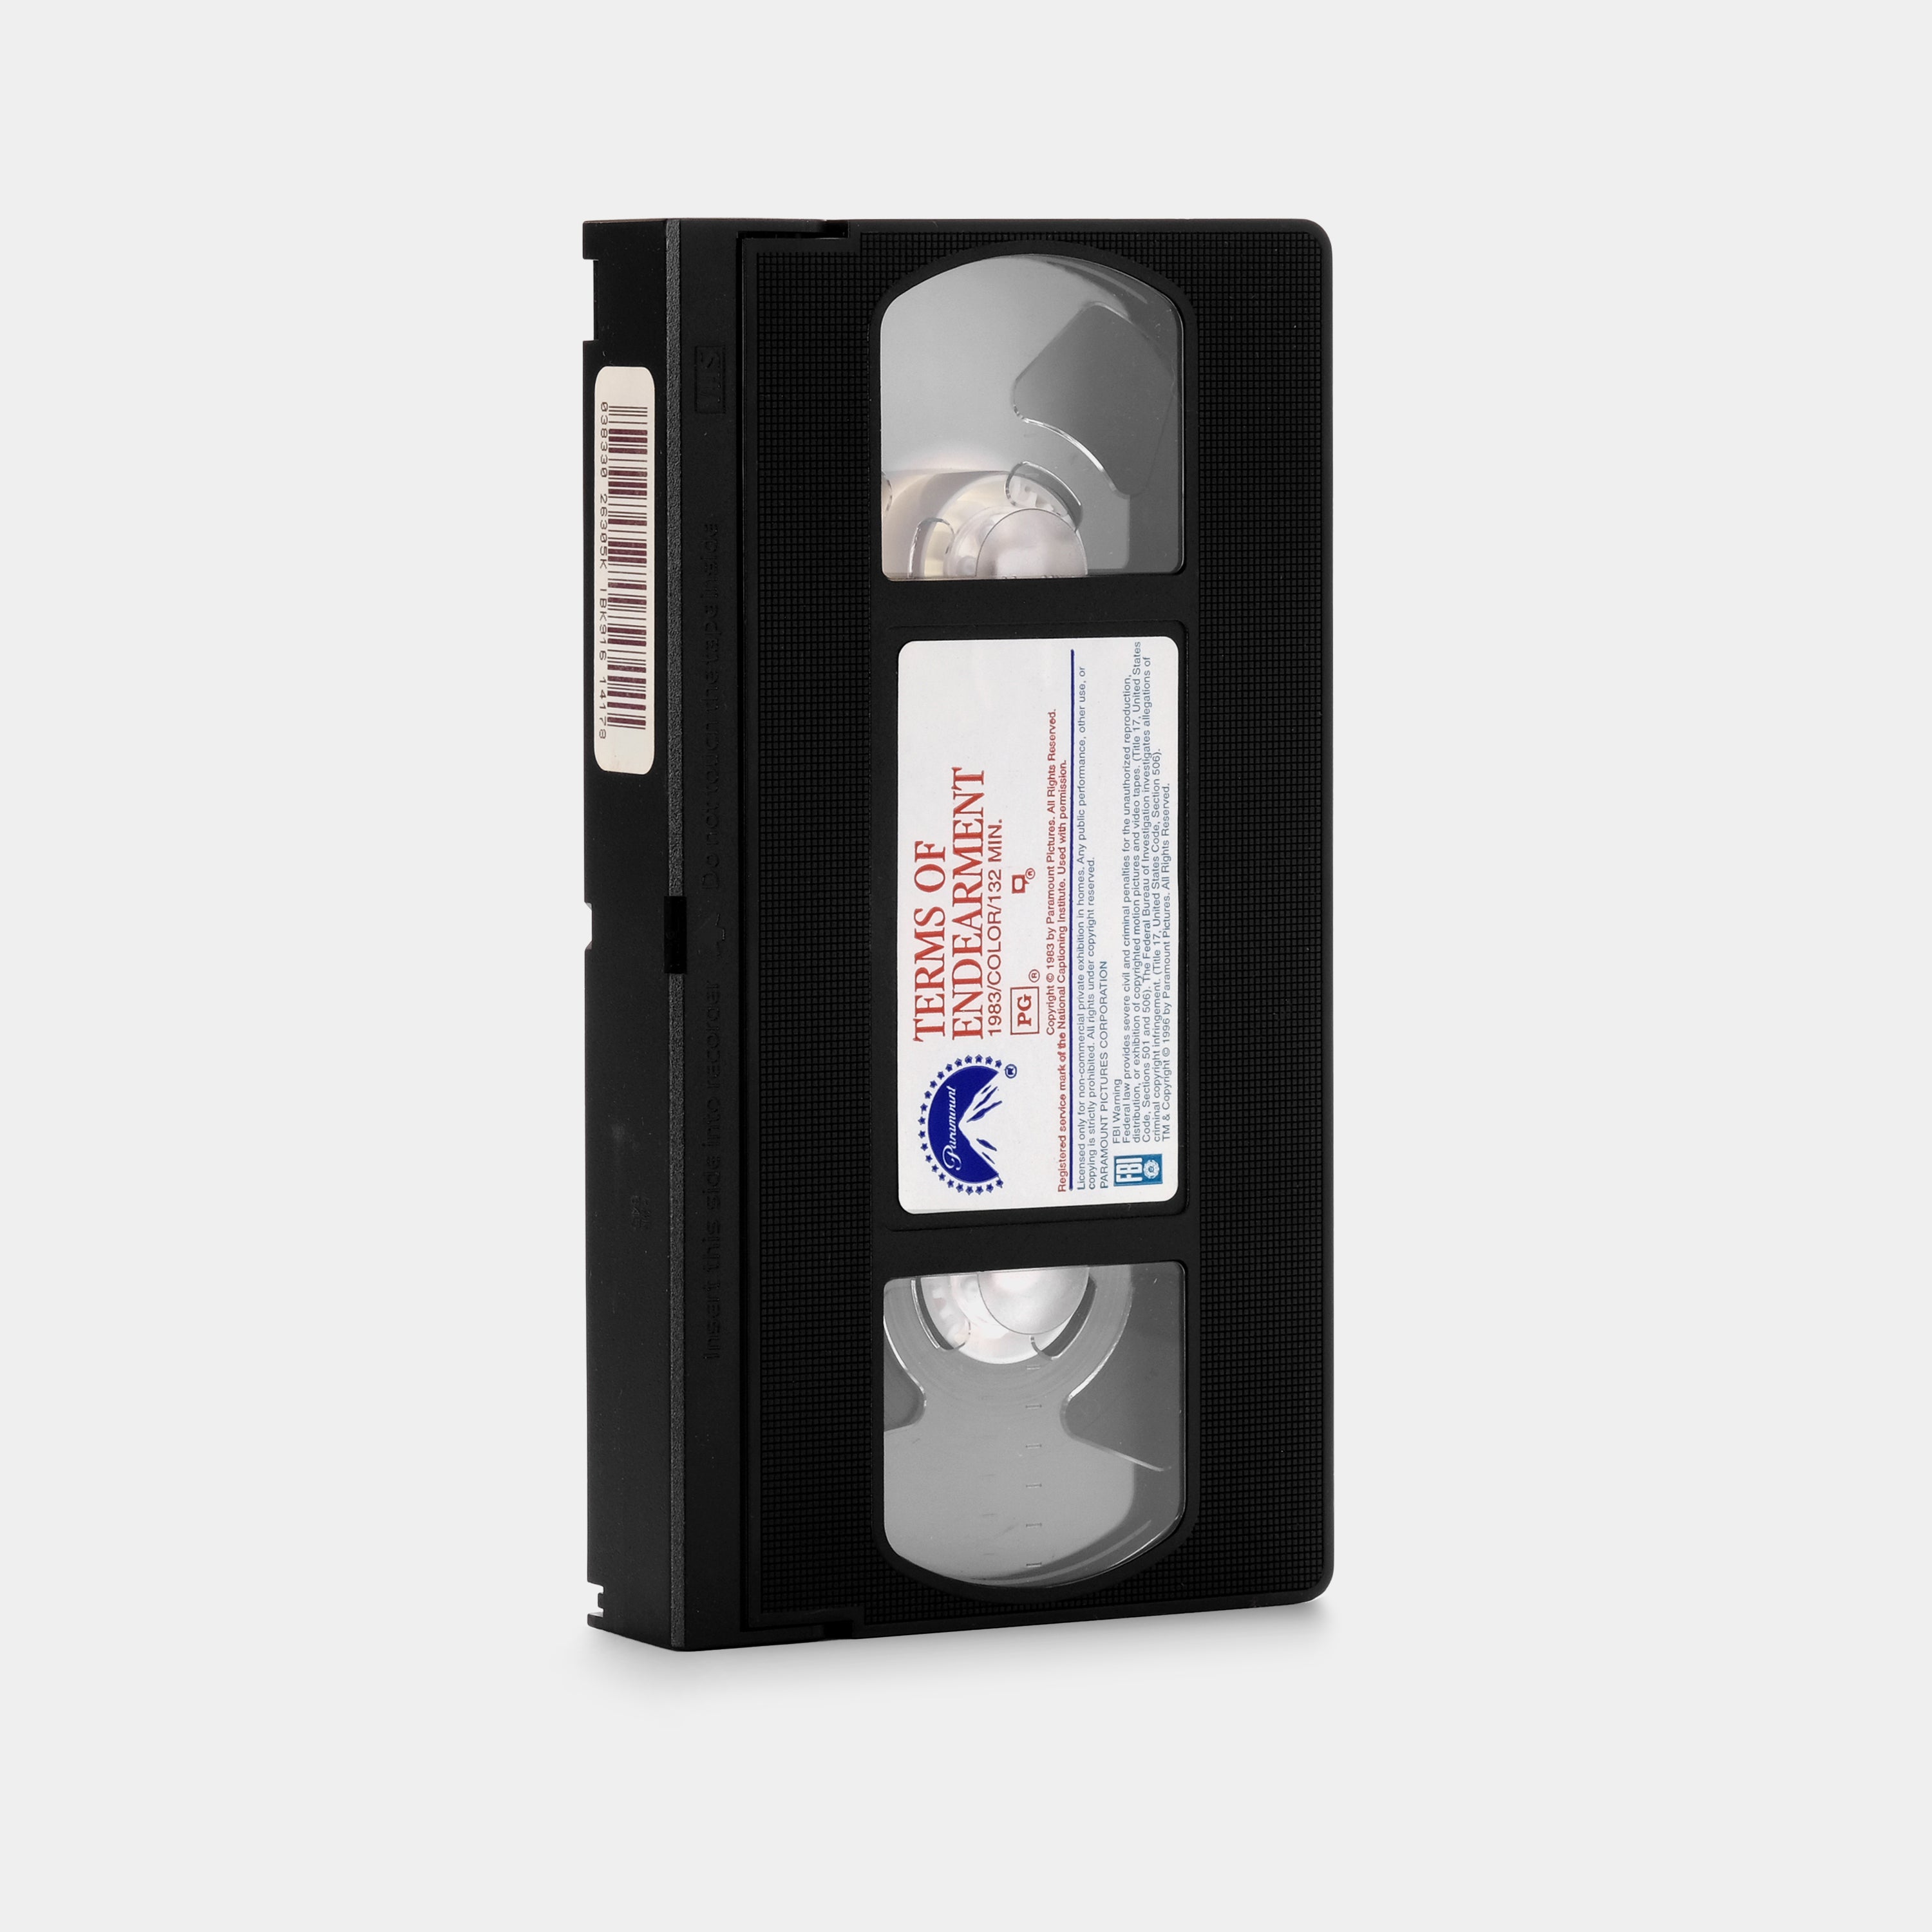 Cassette d'adaptation VHS-C - Foto Erhardt